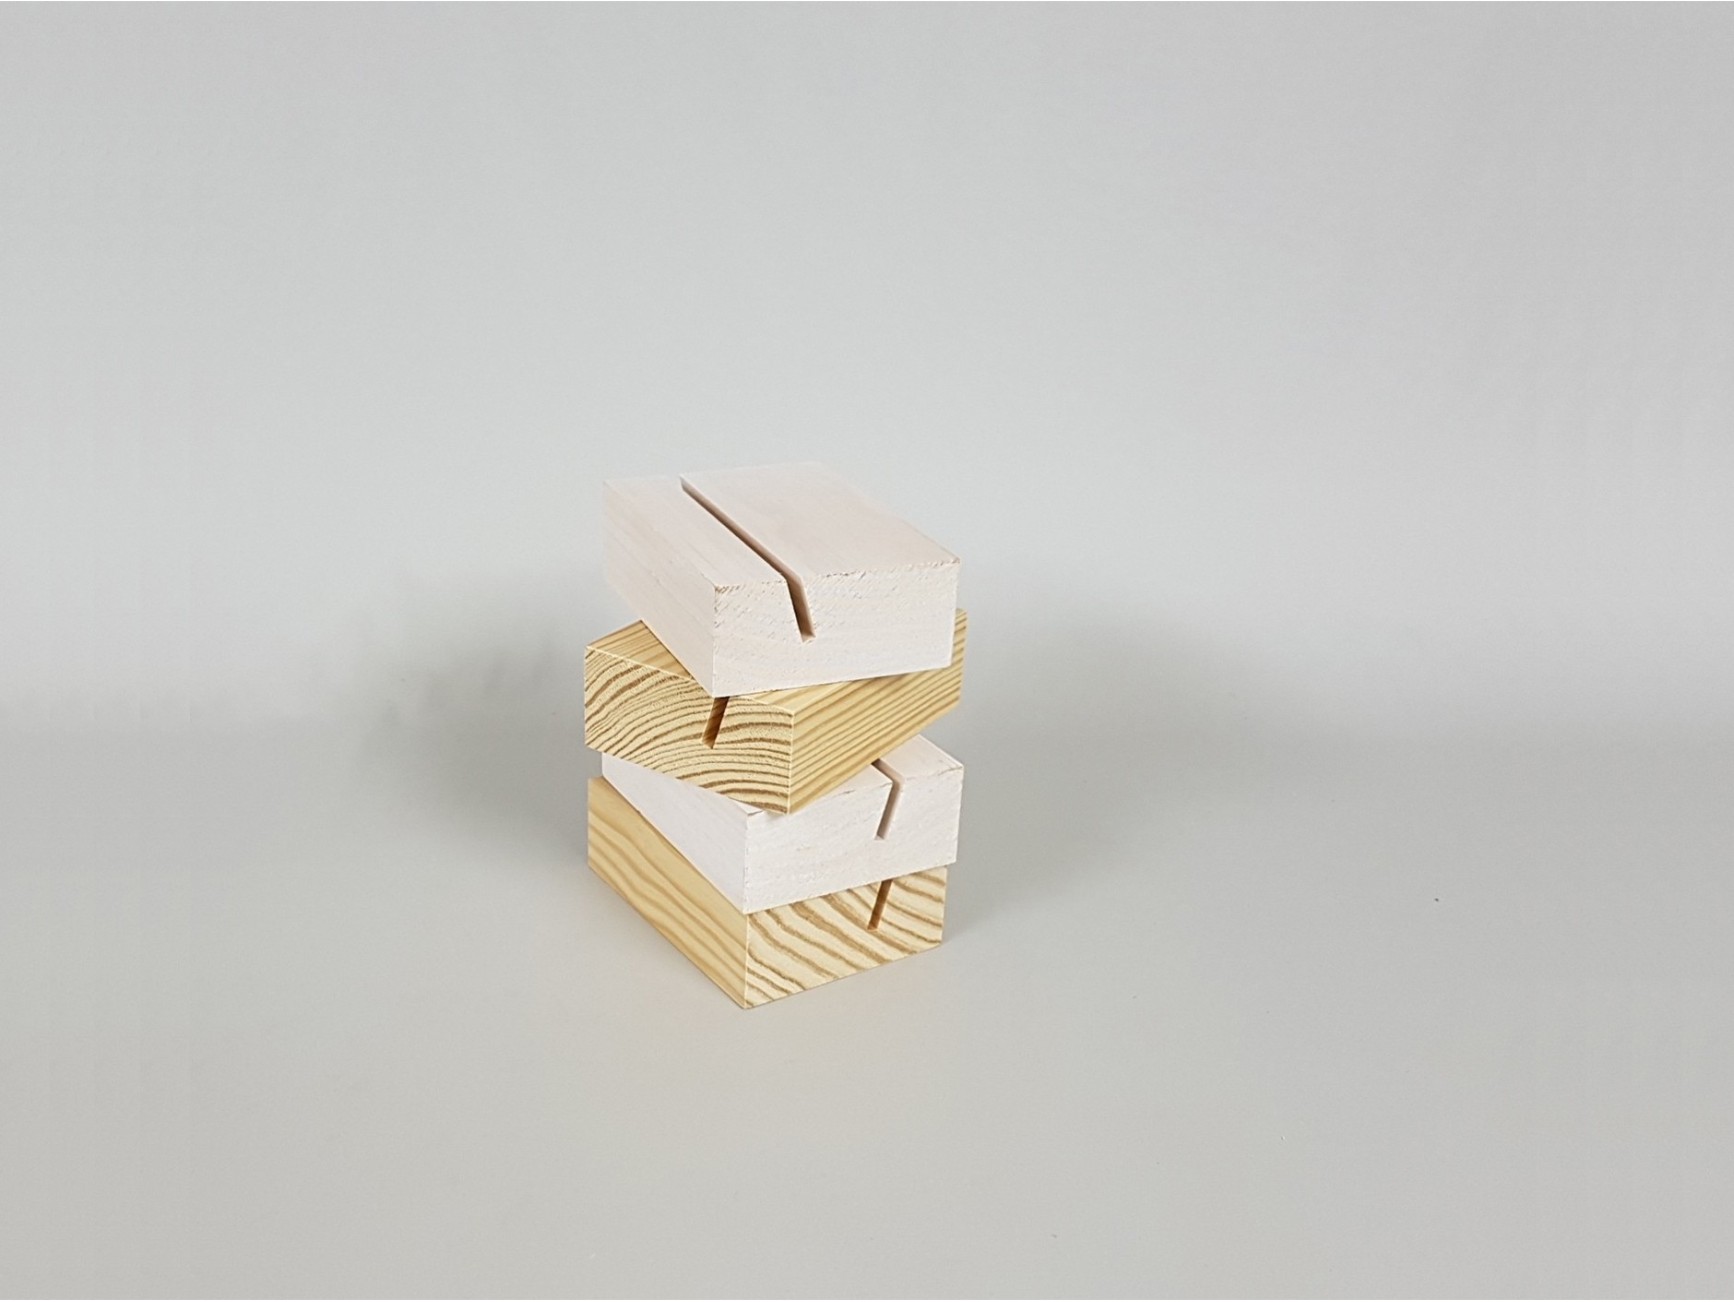  Paquete de 10 tacos de madera de 0.394 in x 1.575 in :  Industrial y Científico